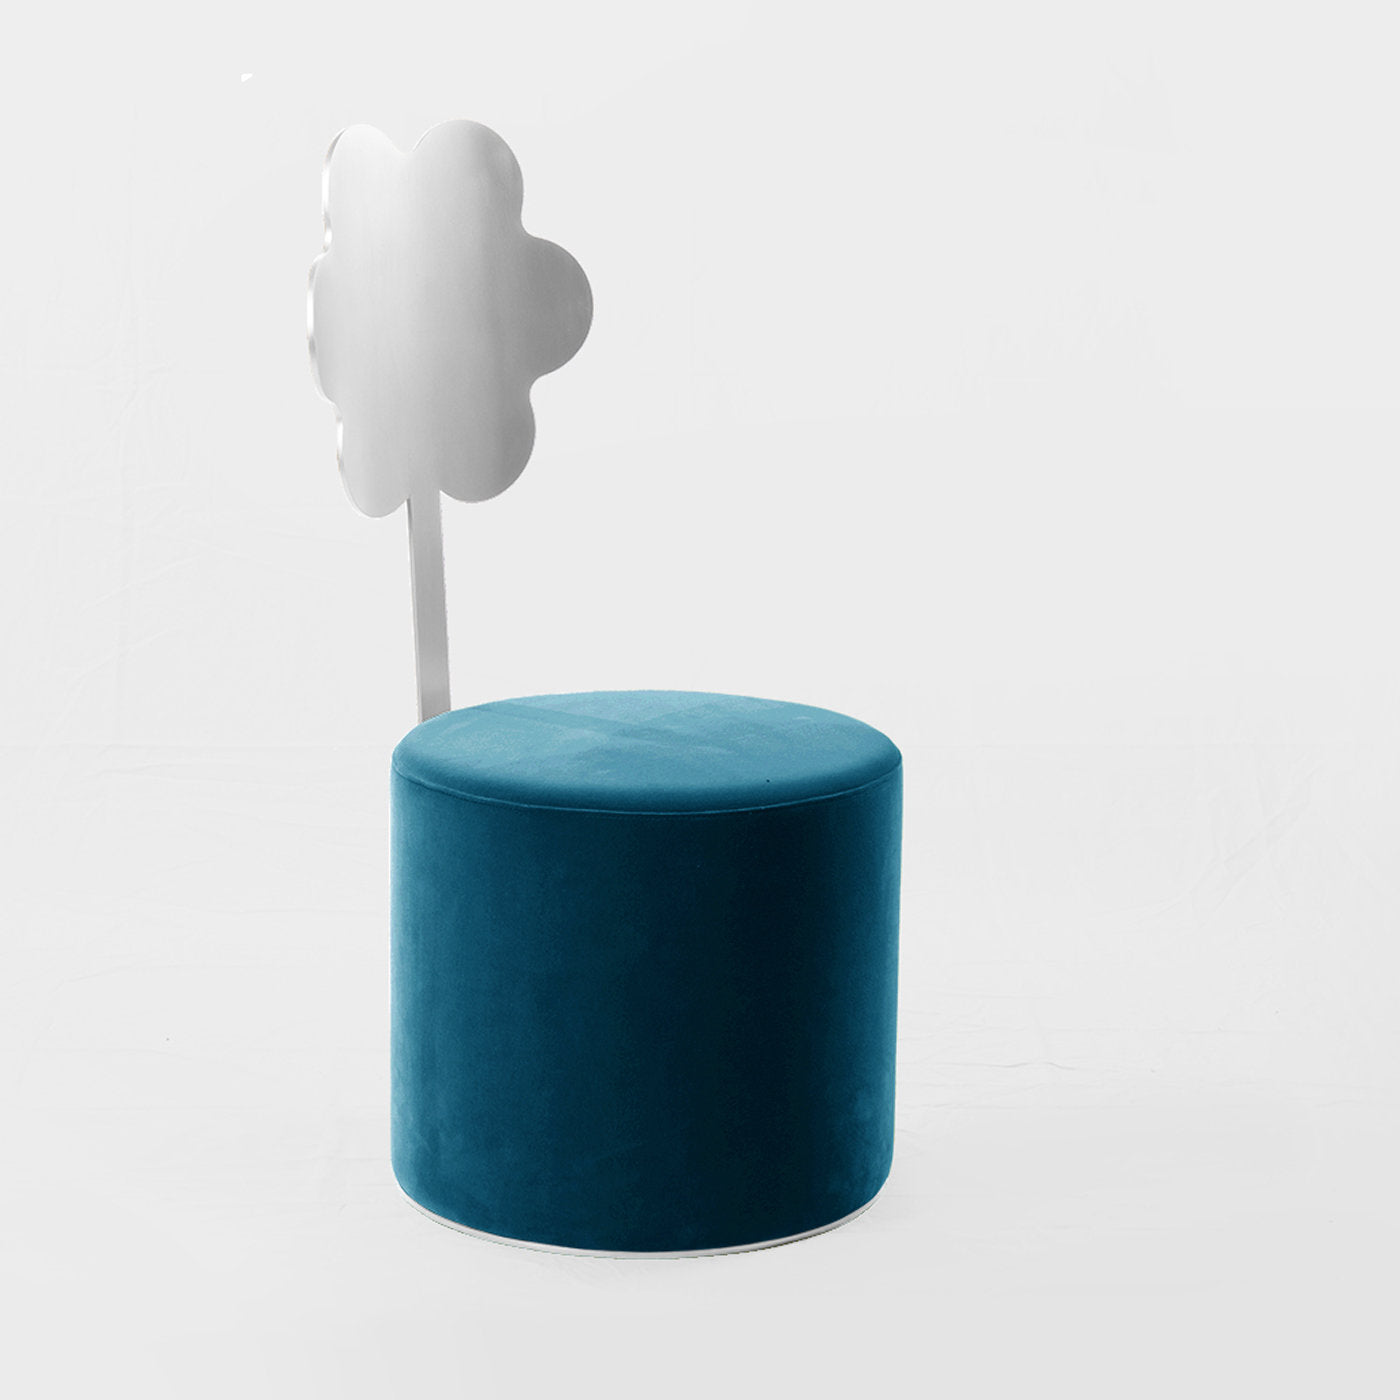 Daisy Blue Pouf by Artefatto Design Studio - Alternative view 1